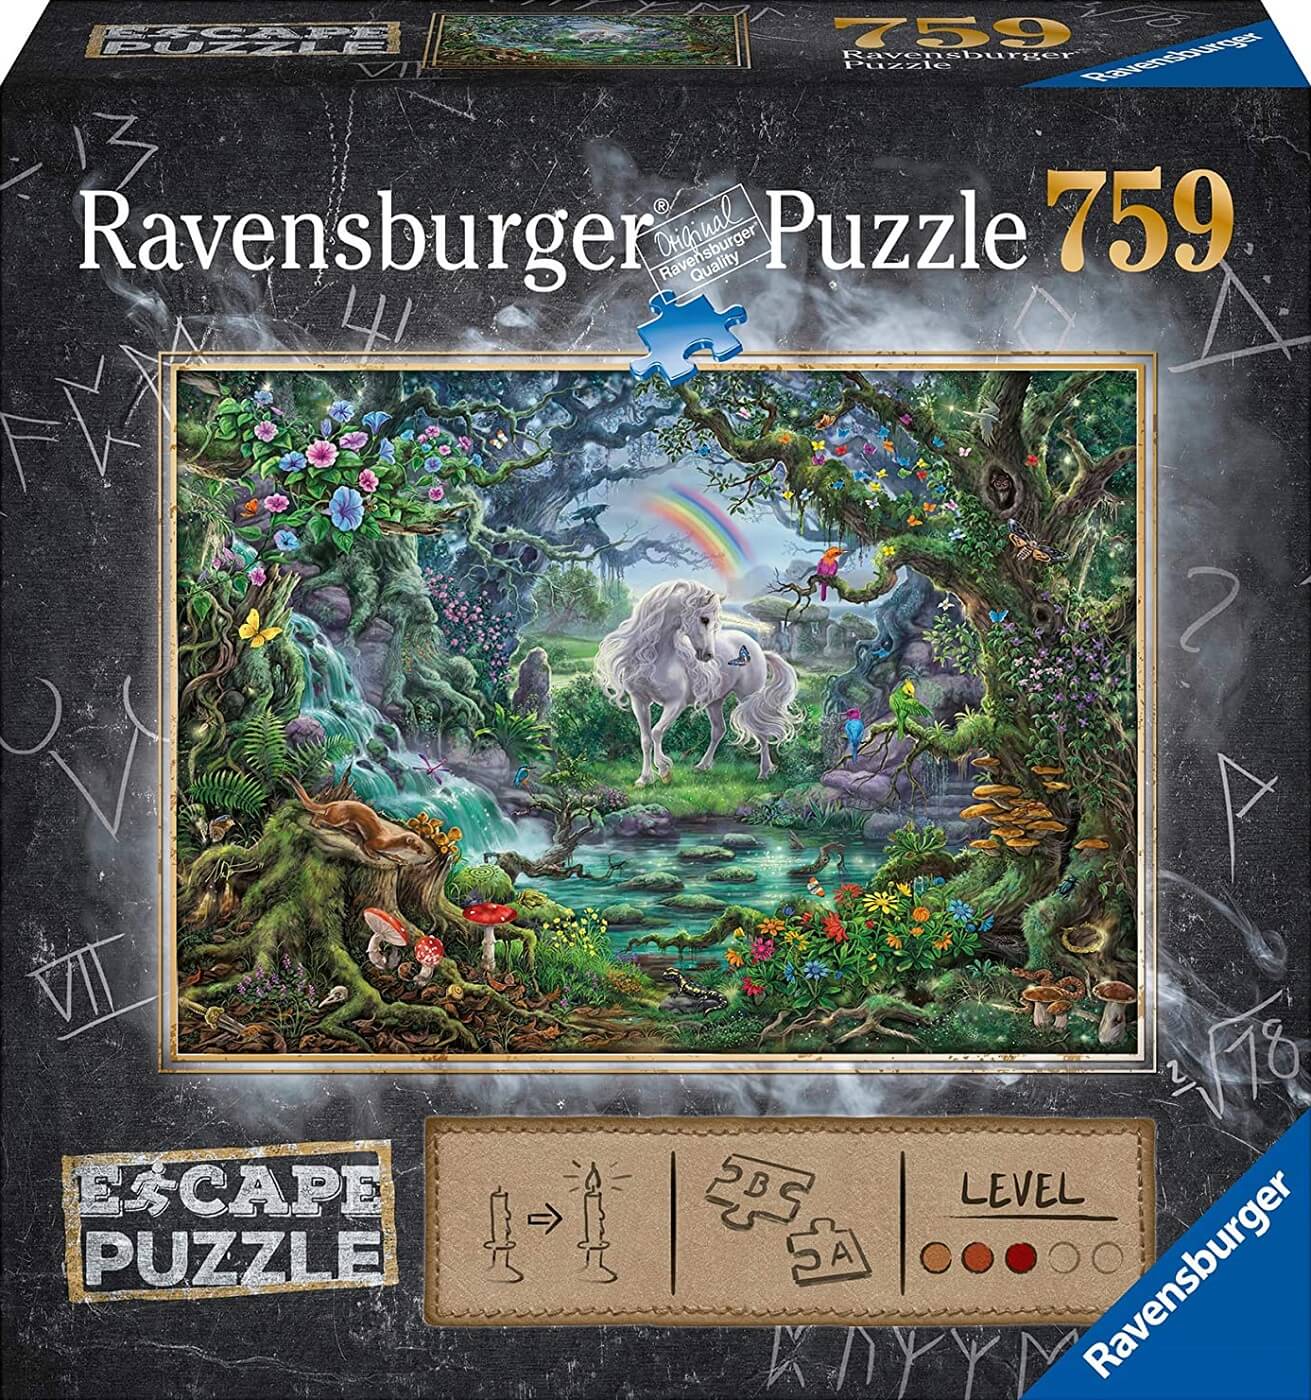 Ravensburger Puzzle Puzzle Adultos Puzzle Escape the Puzzle Rompecabeza Adultos de Calidad 759 Piezas Edad Recomendada 12+ Unicornio